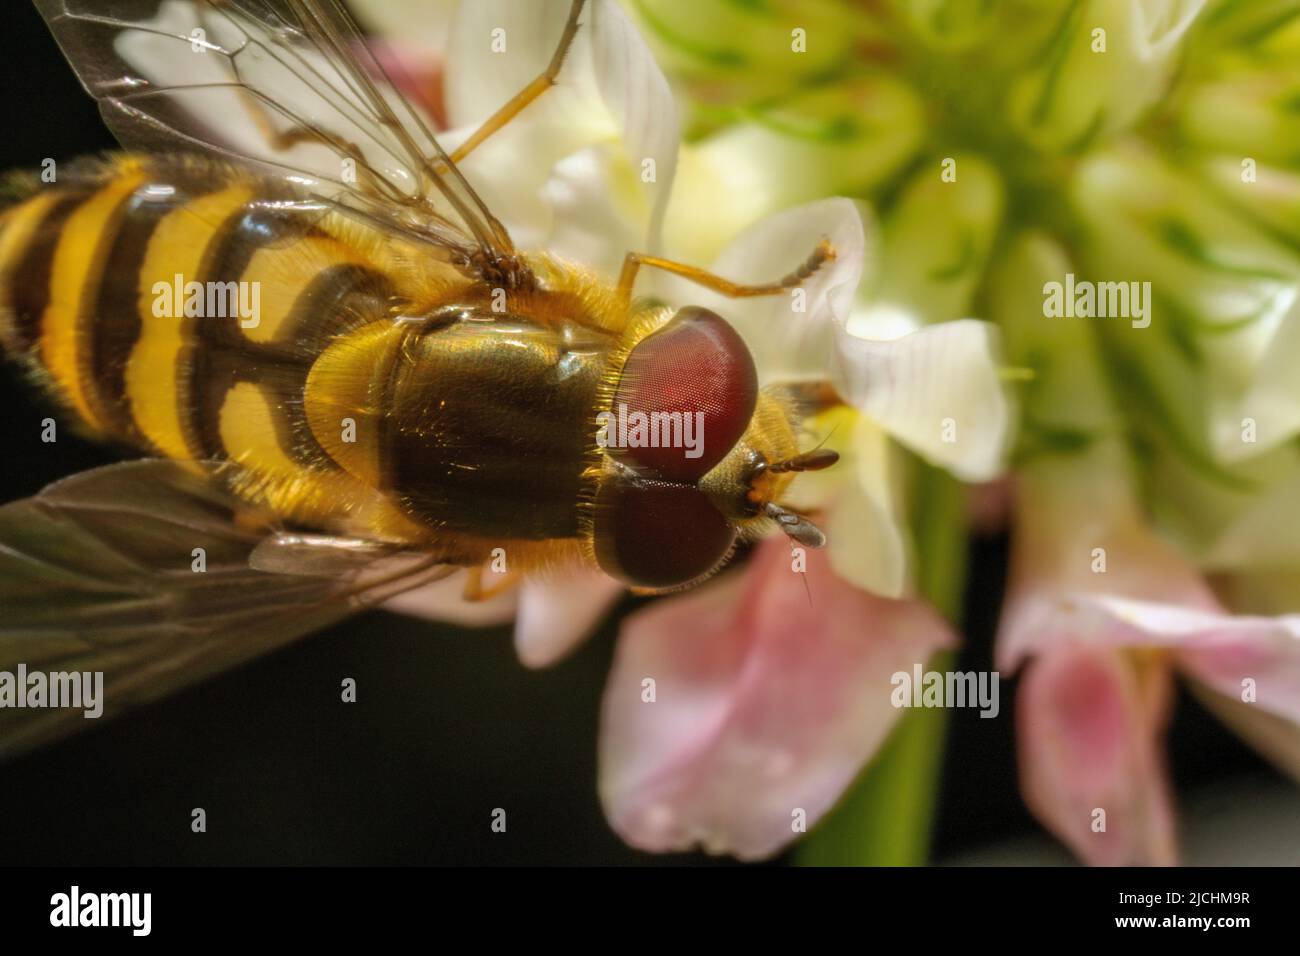 Détail de la tête, des yeux, des ailes et d'une partie du corps d'une abeille, pollinisant sur une fleur Banque D'Images